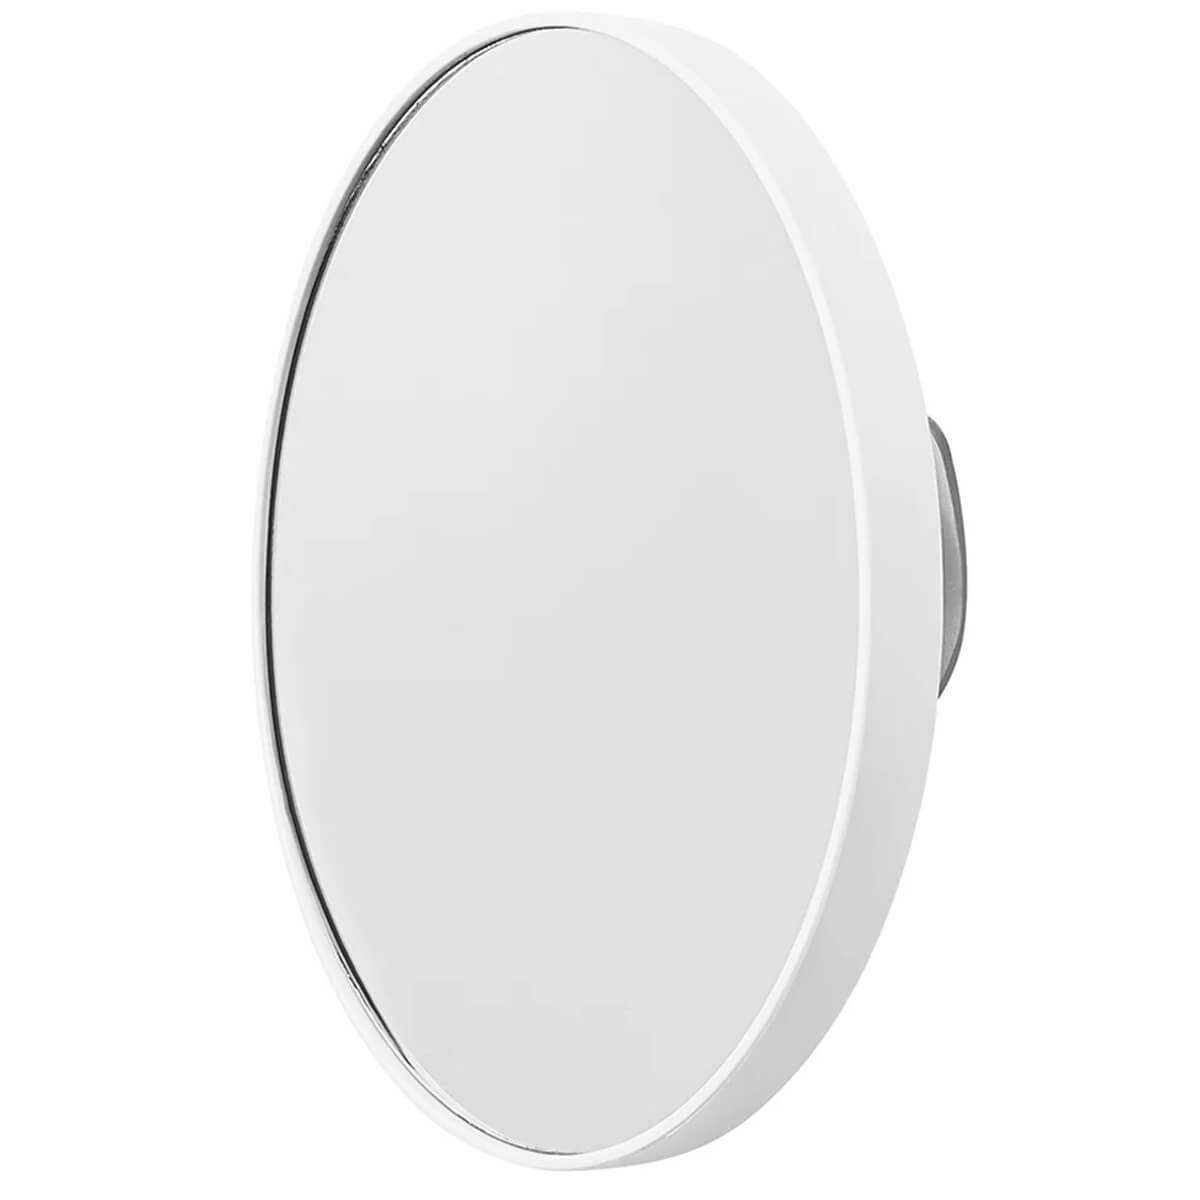 Espelho de Aumento Redondo Branco com 2 Ventosas para Banheiro 14cm UZ